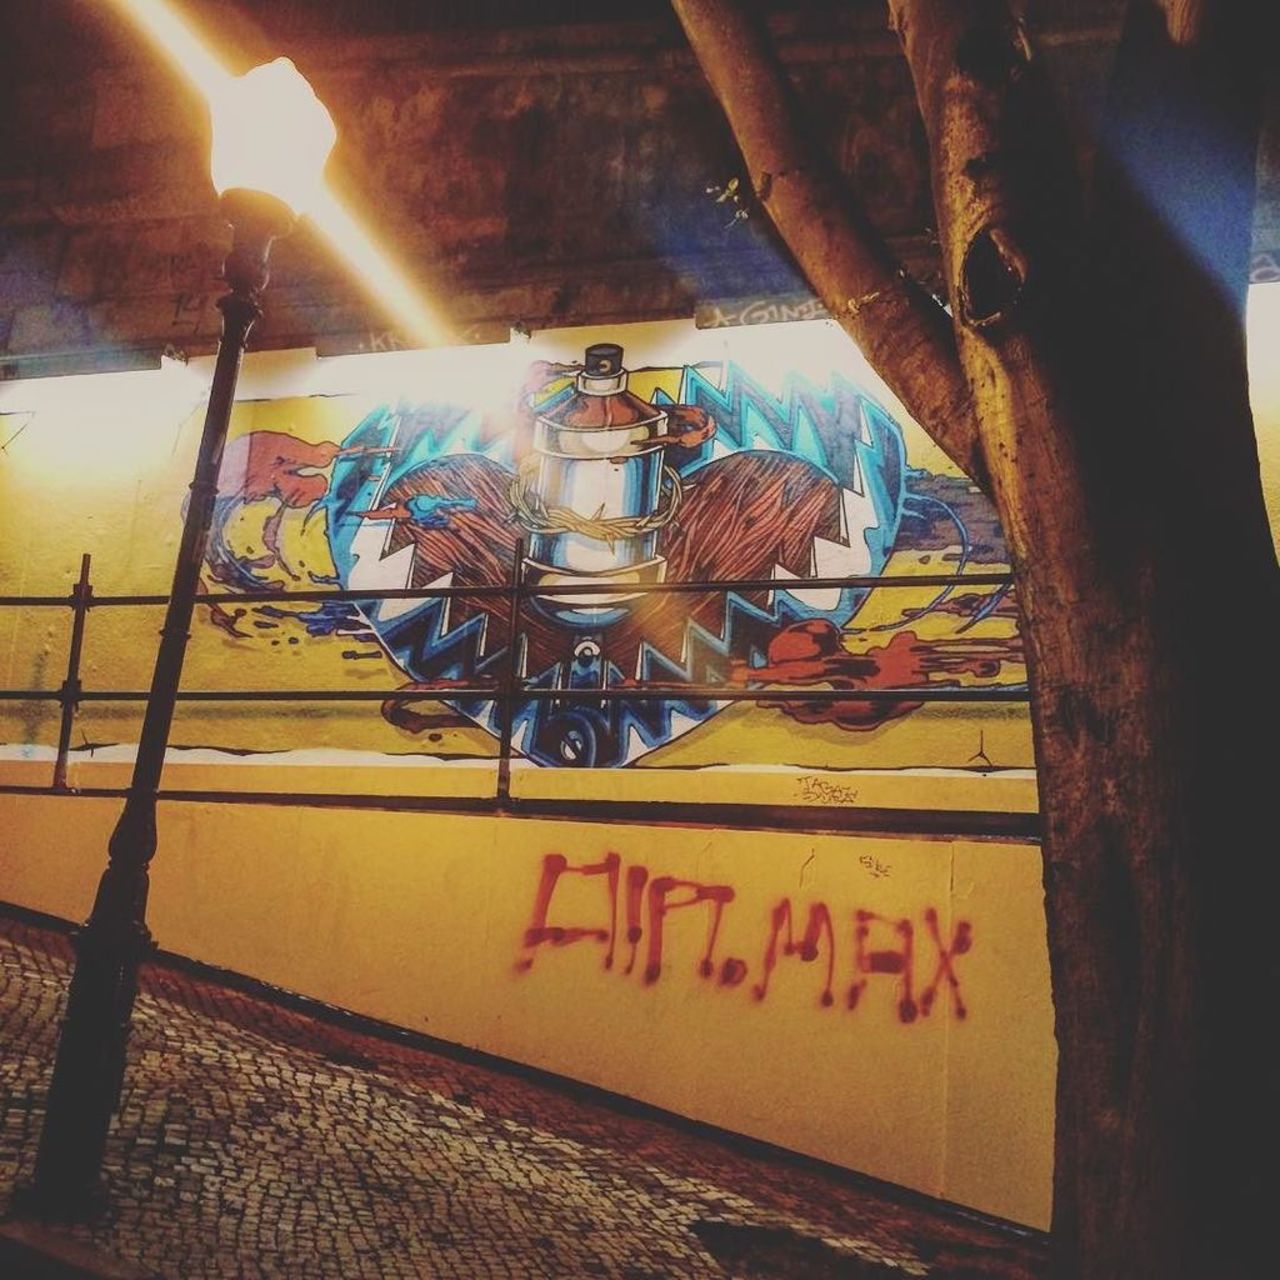 #lisboa #lisbon #streetart #graffiti #art #gau #arteurbana #elevadordaglorià #bairroalto by beeho_thc https://t.co/kMLNf0xk1M